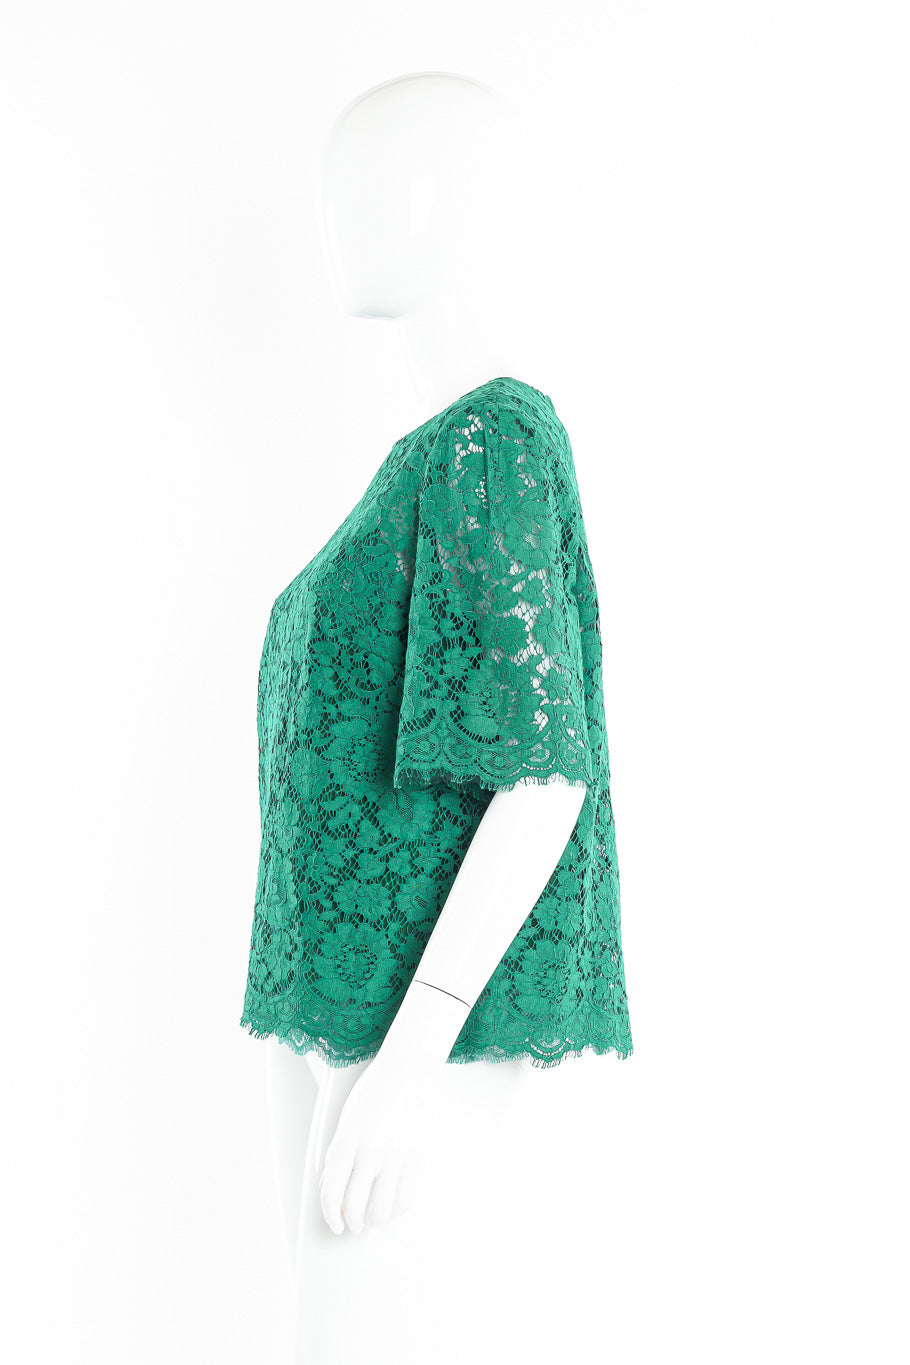 Dolce & Gabbana soutache lace top on mannequin @recessla